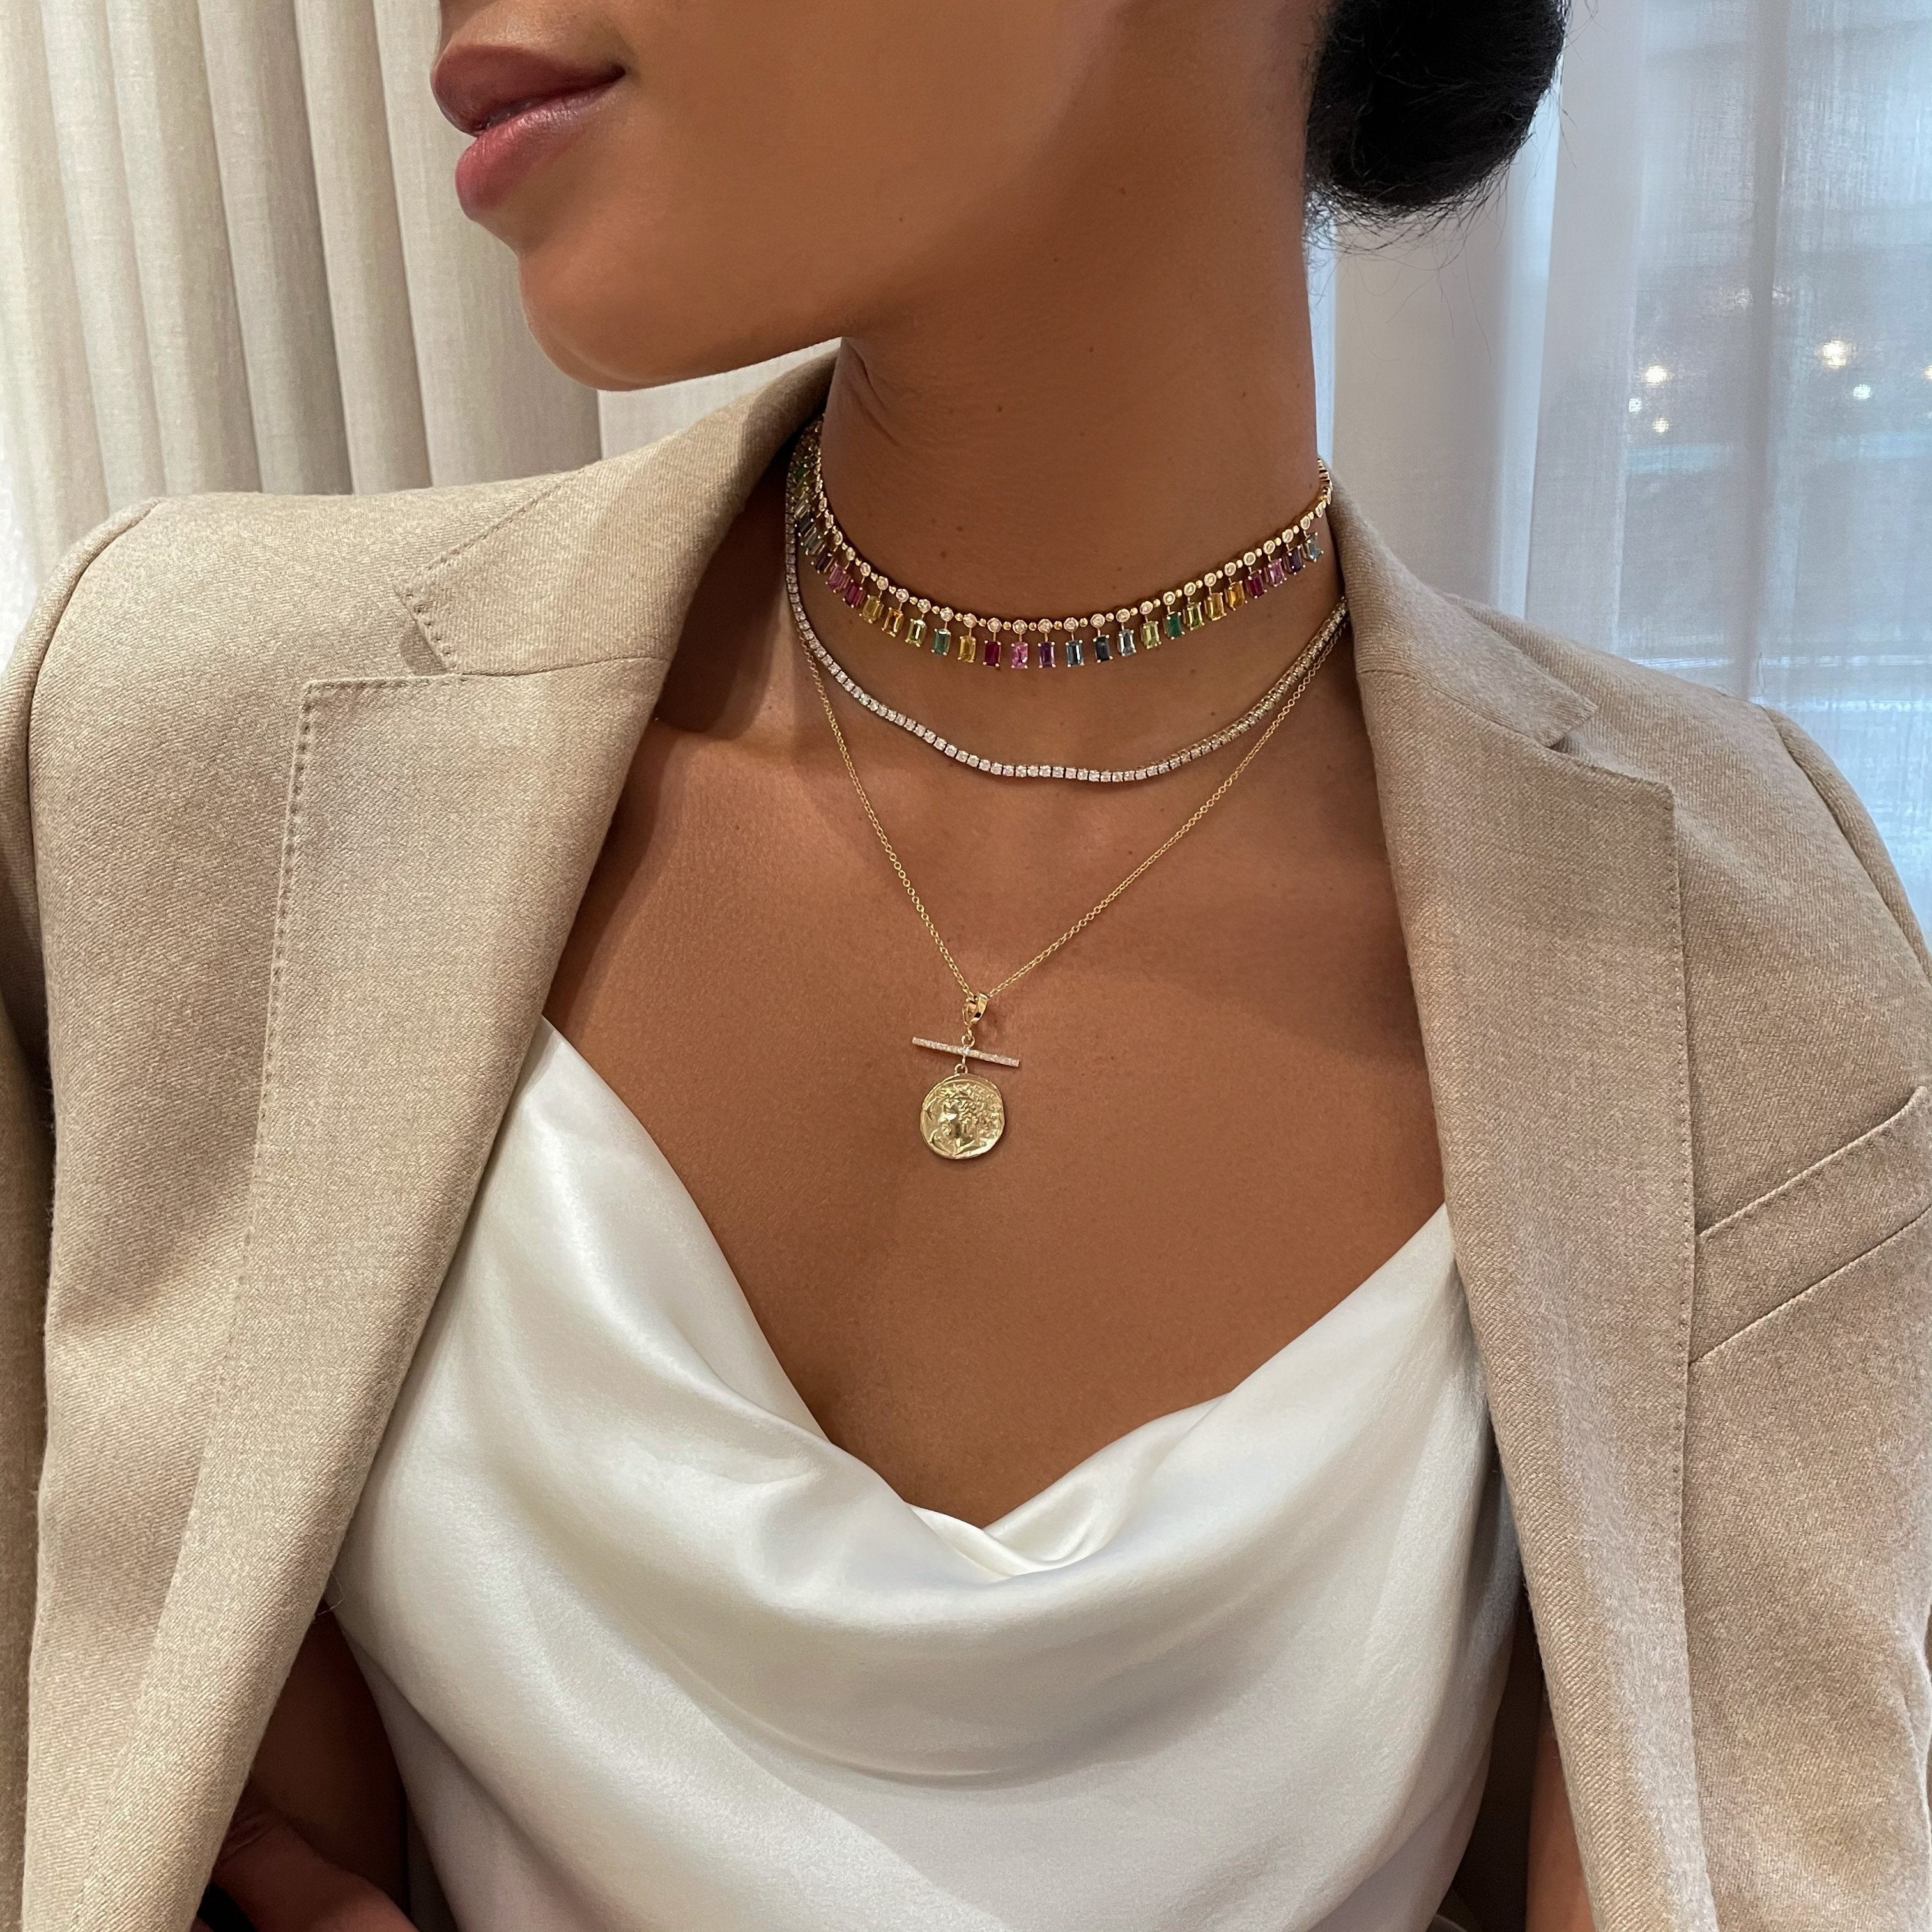 Goddess Small Diamond Coin Charm Necklace with Pavé Diamond Bar